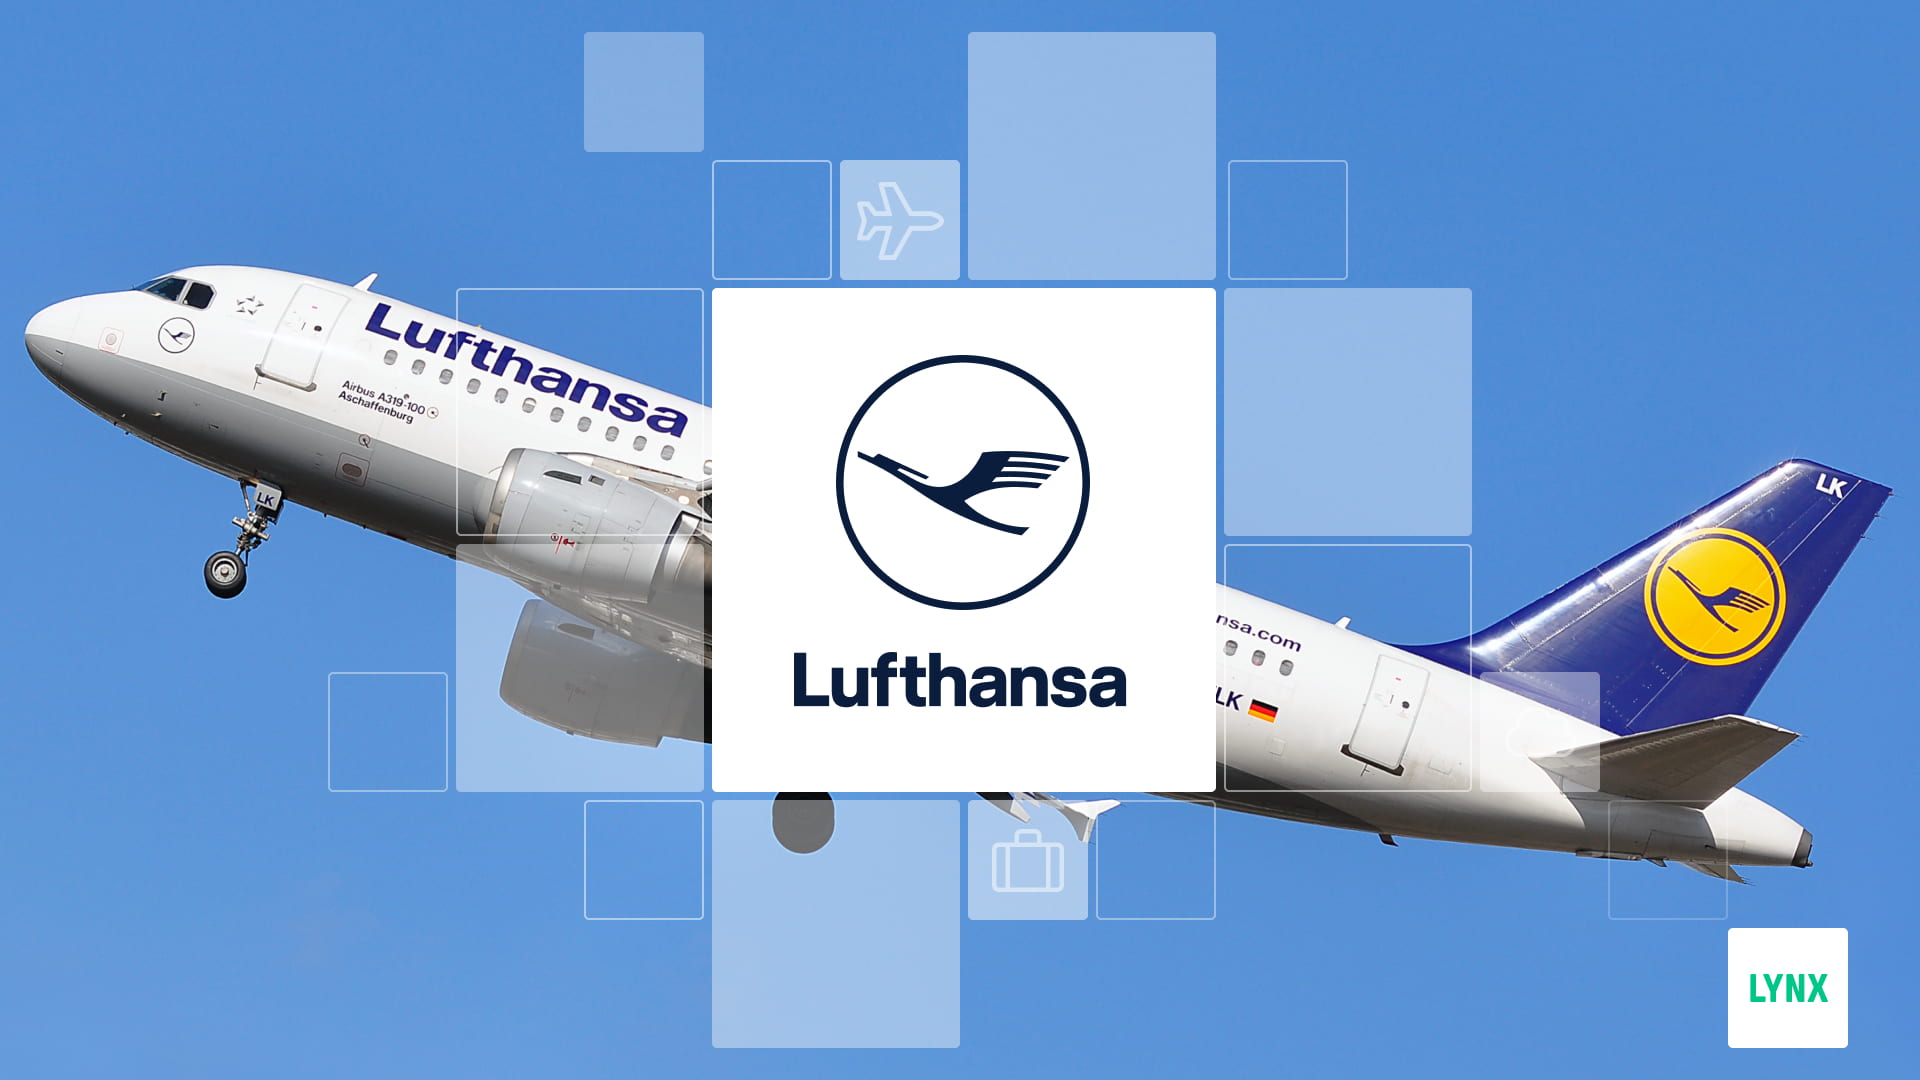 Letadlo a logo společnosti Lufthansa